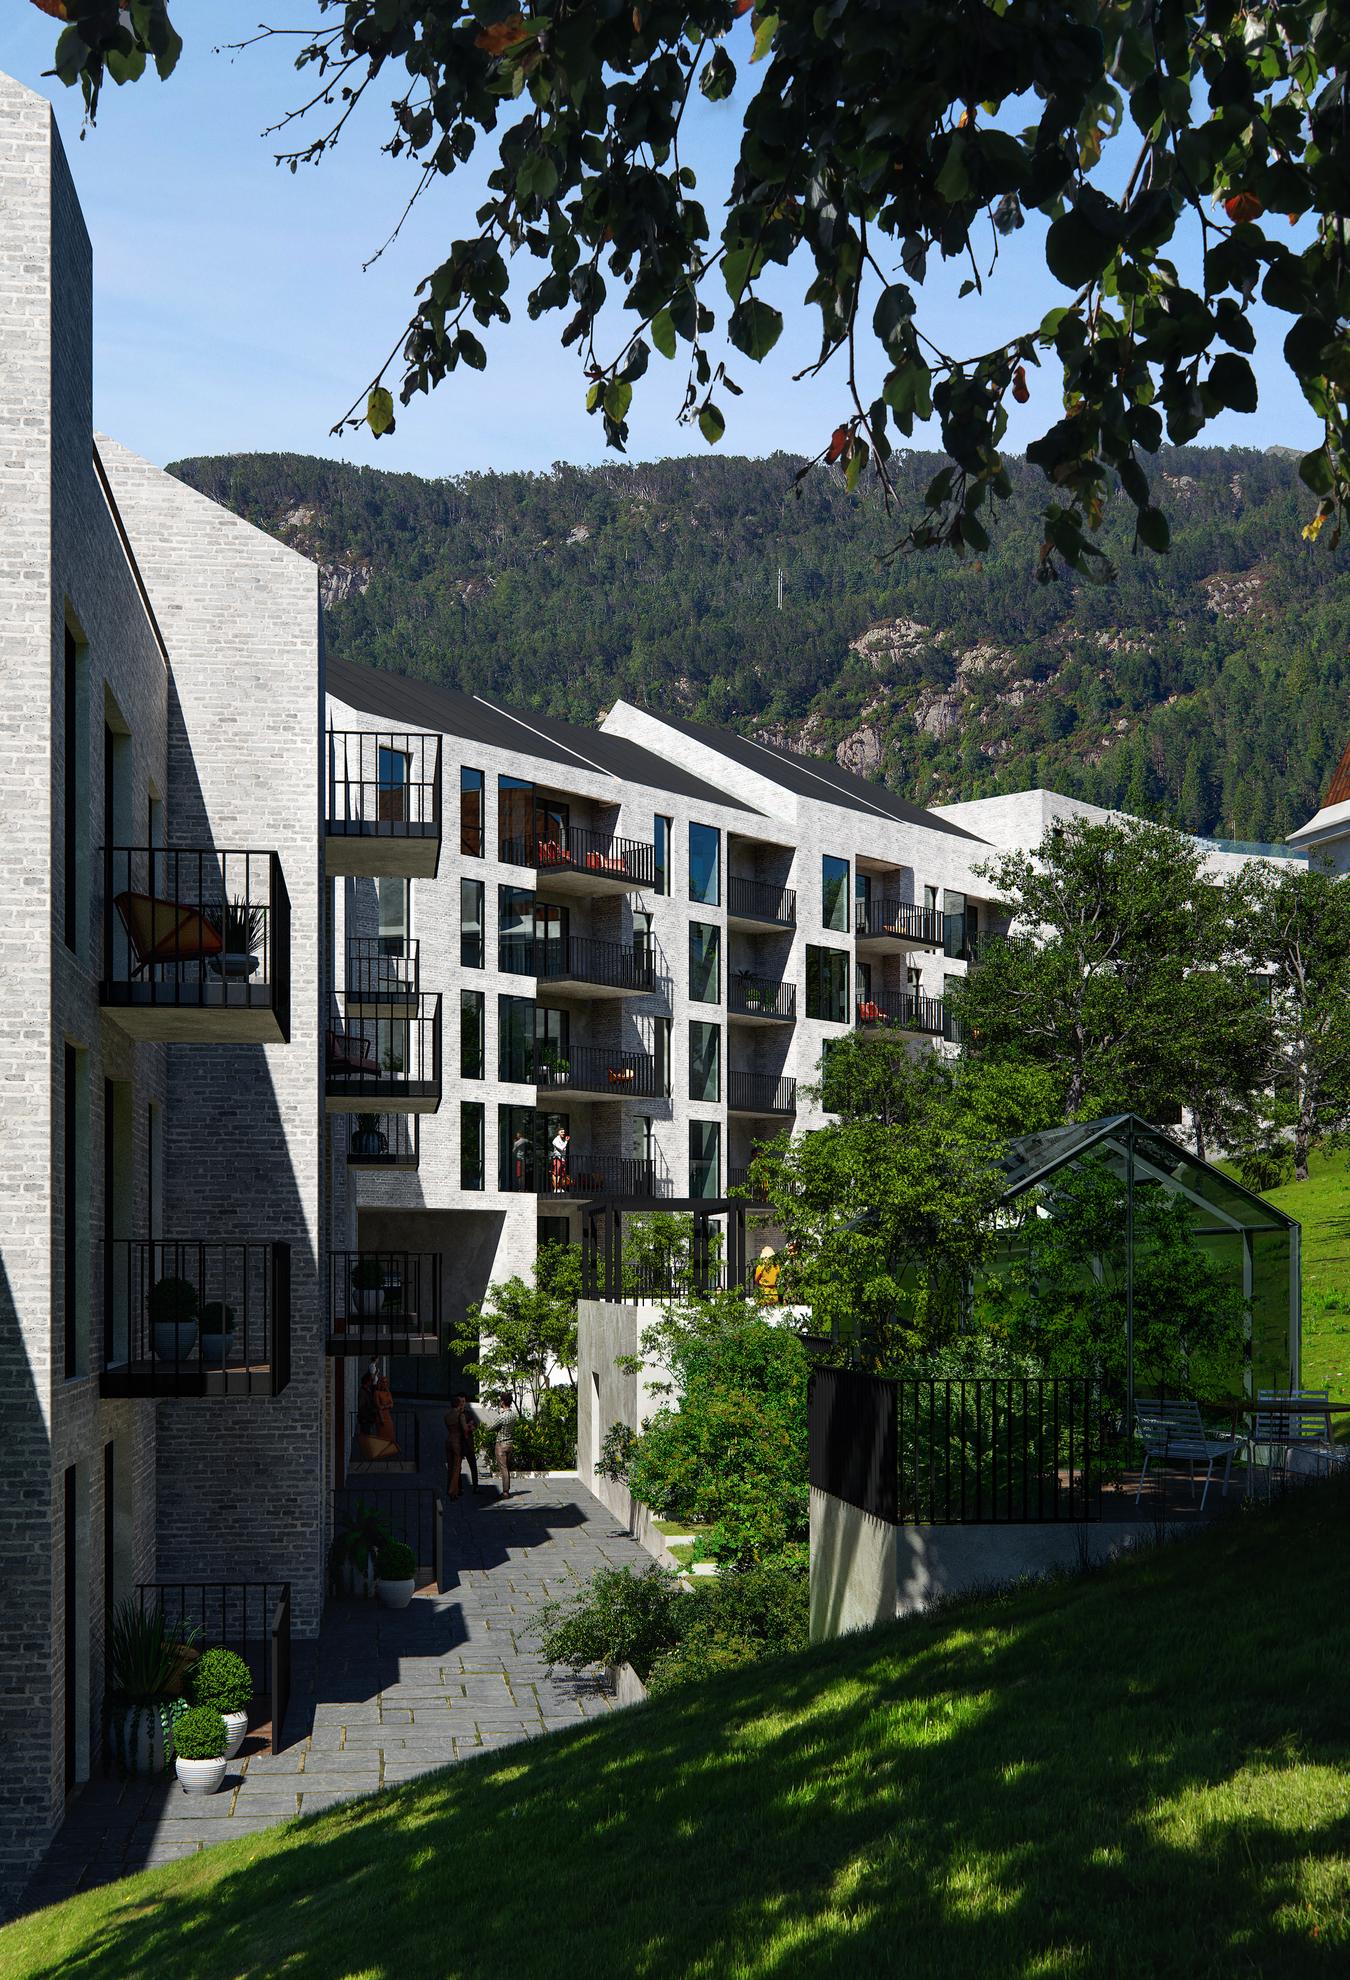 Grå mursteinsfasade med balkonger. Grønt utendørsområde med drivhus og trær. Illustrasjon 